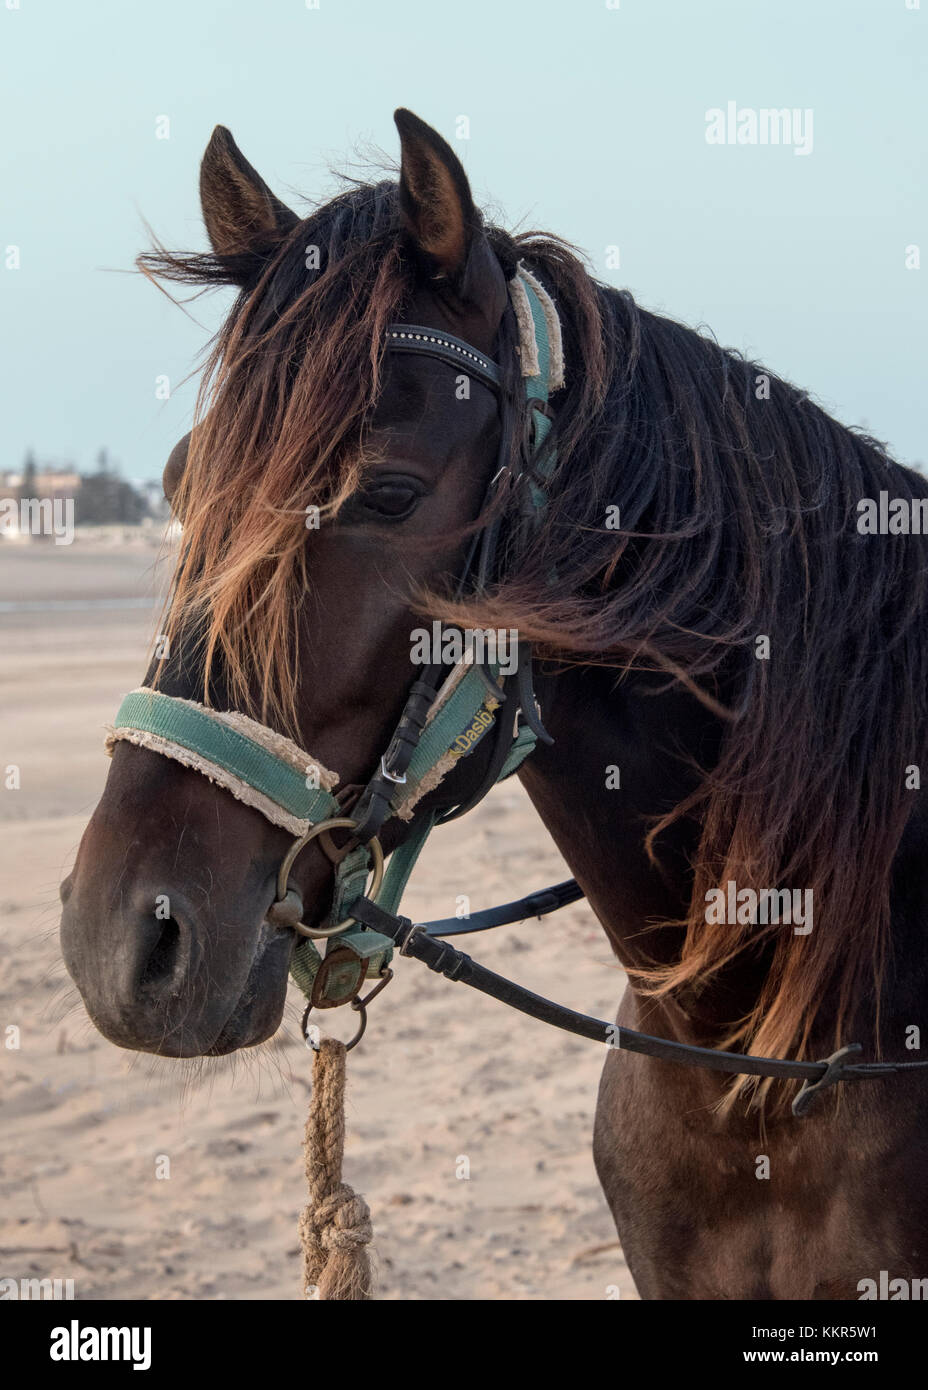 Essaouira, Maroc - Septembre 2017 : Deux chevaux portant des selles et des harnais attendaient sur la plage Banque D'Images